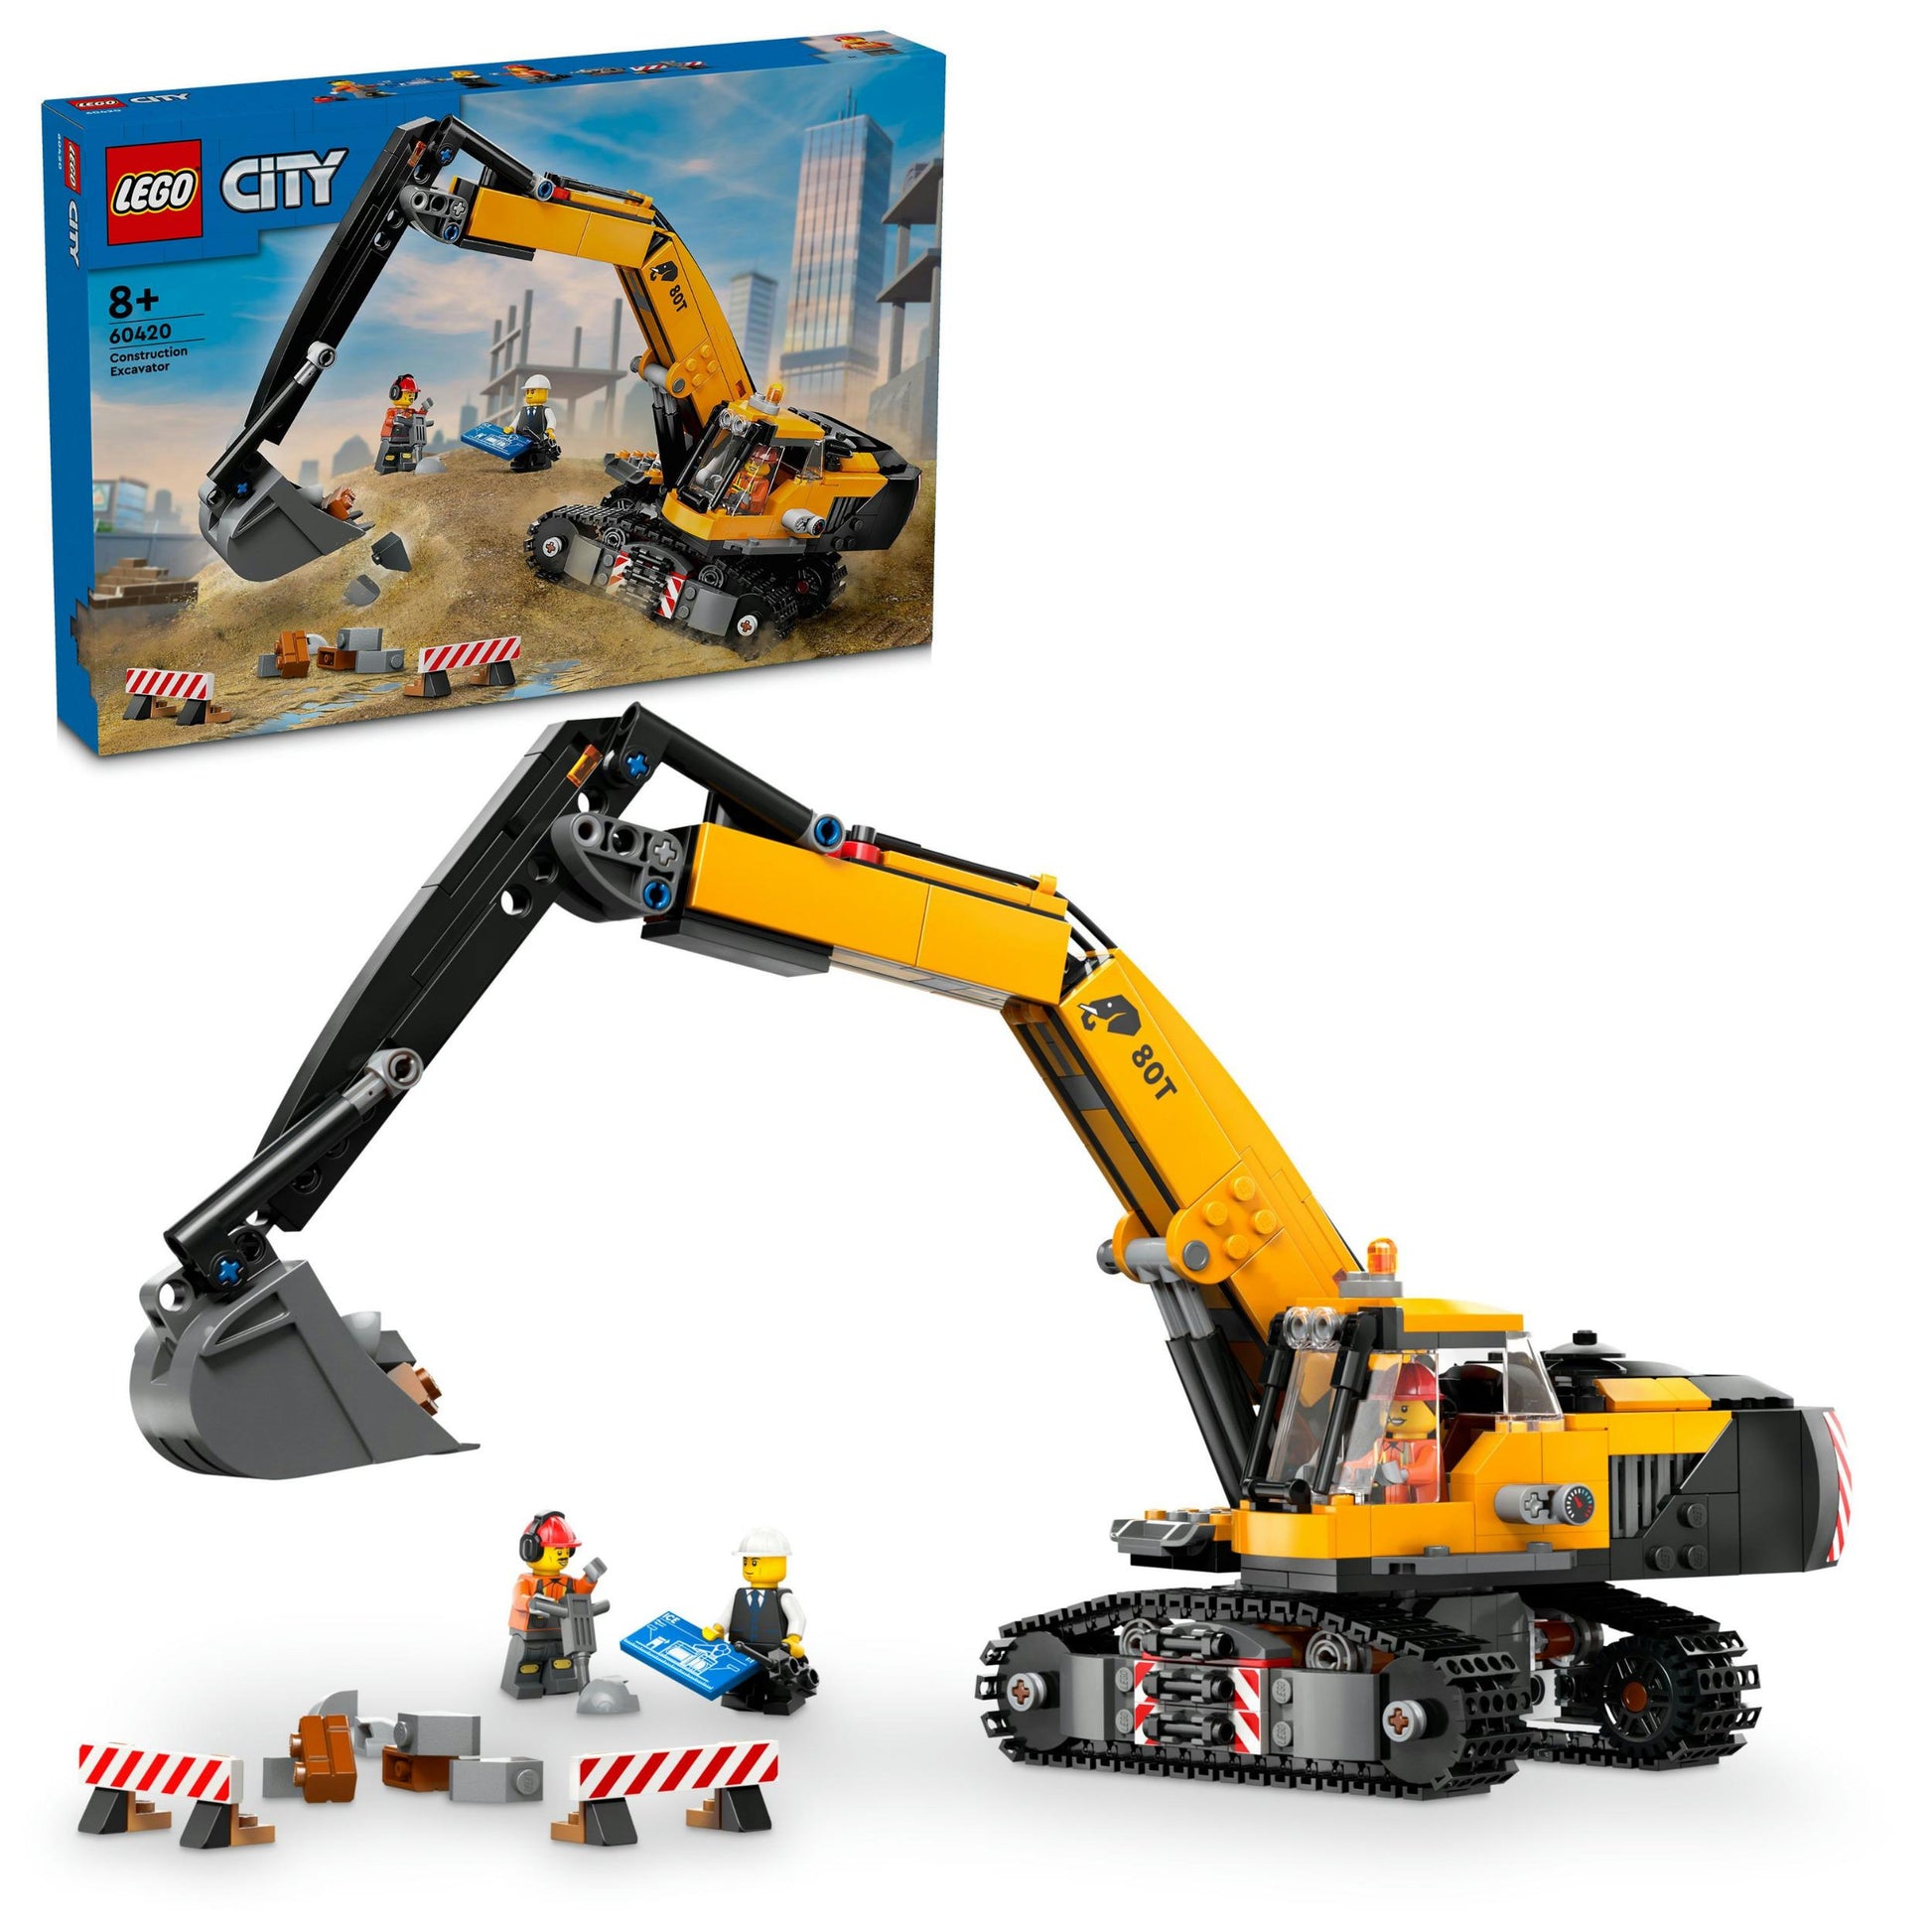 City - Yellow construction excavator